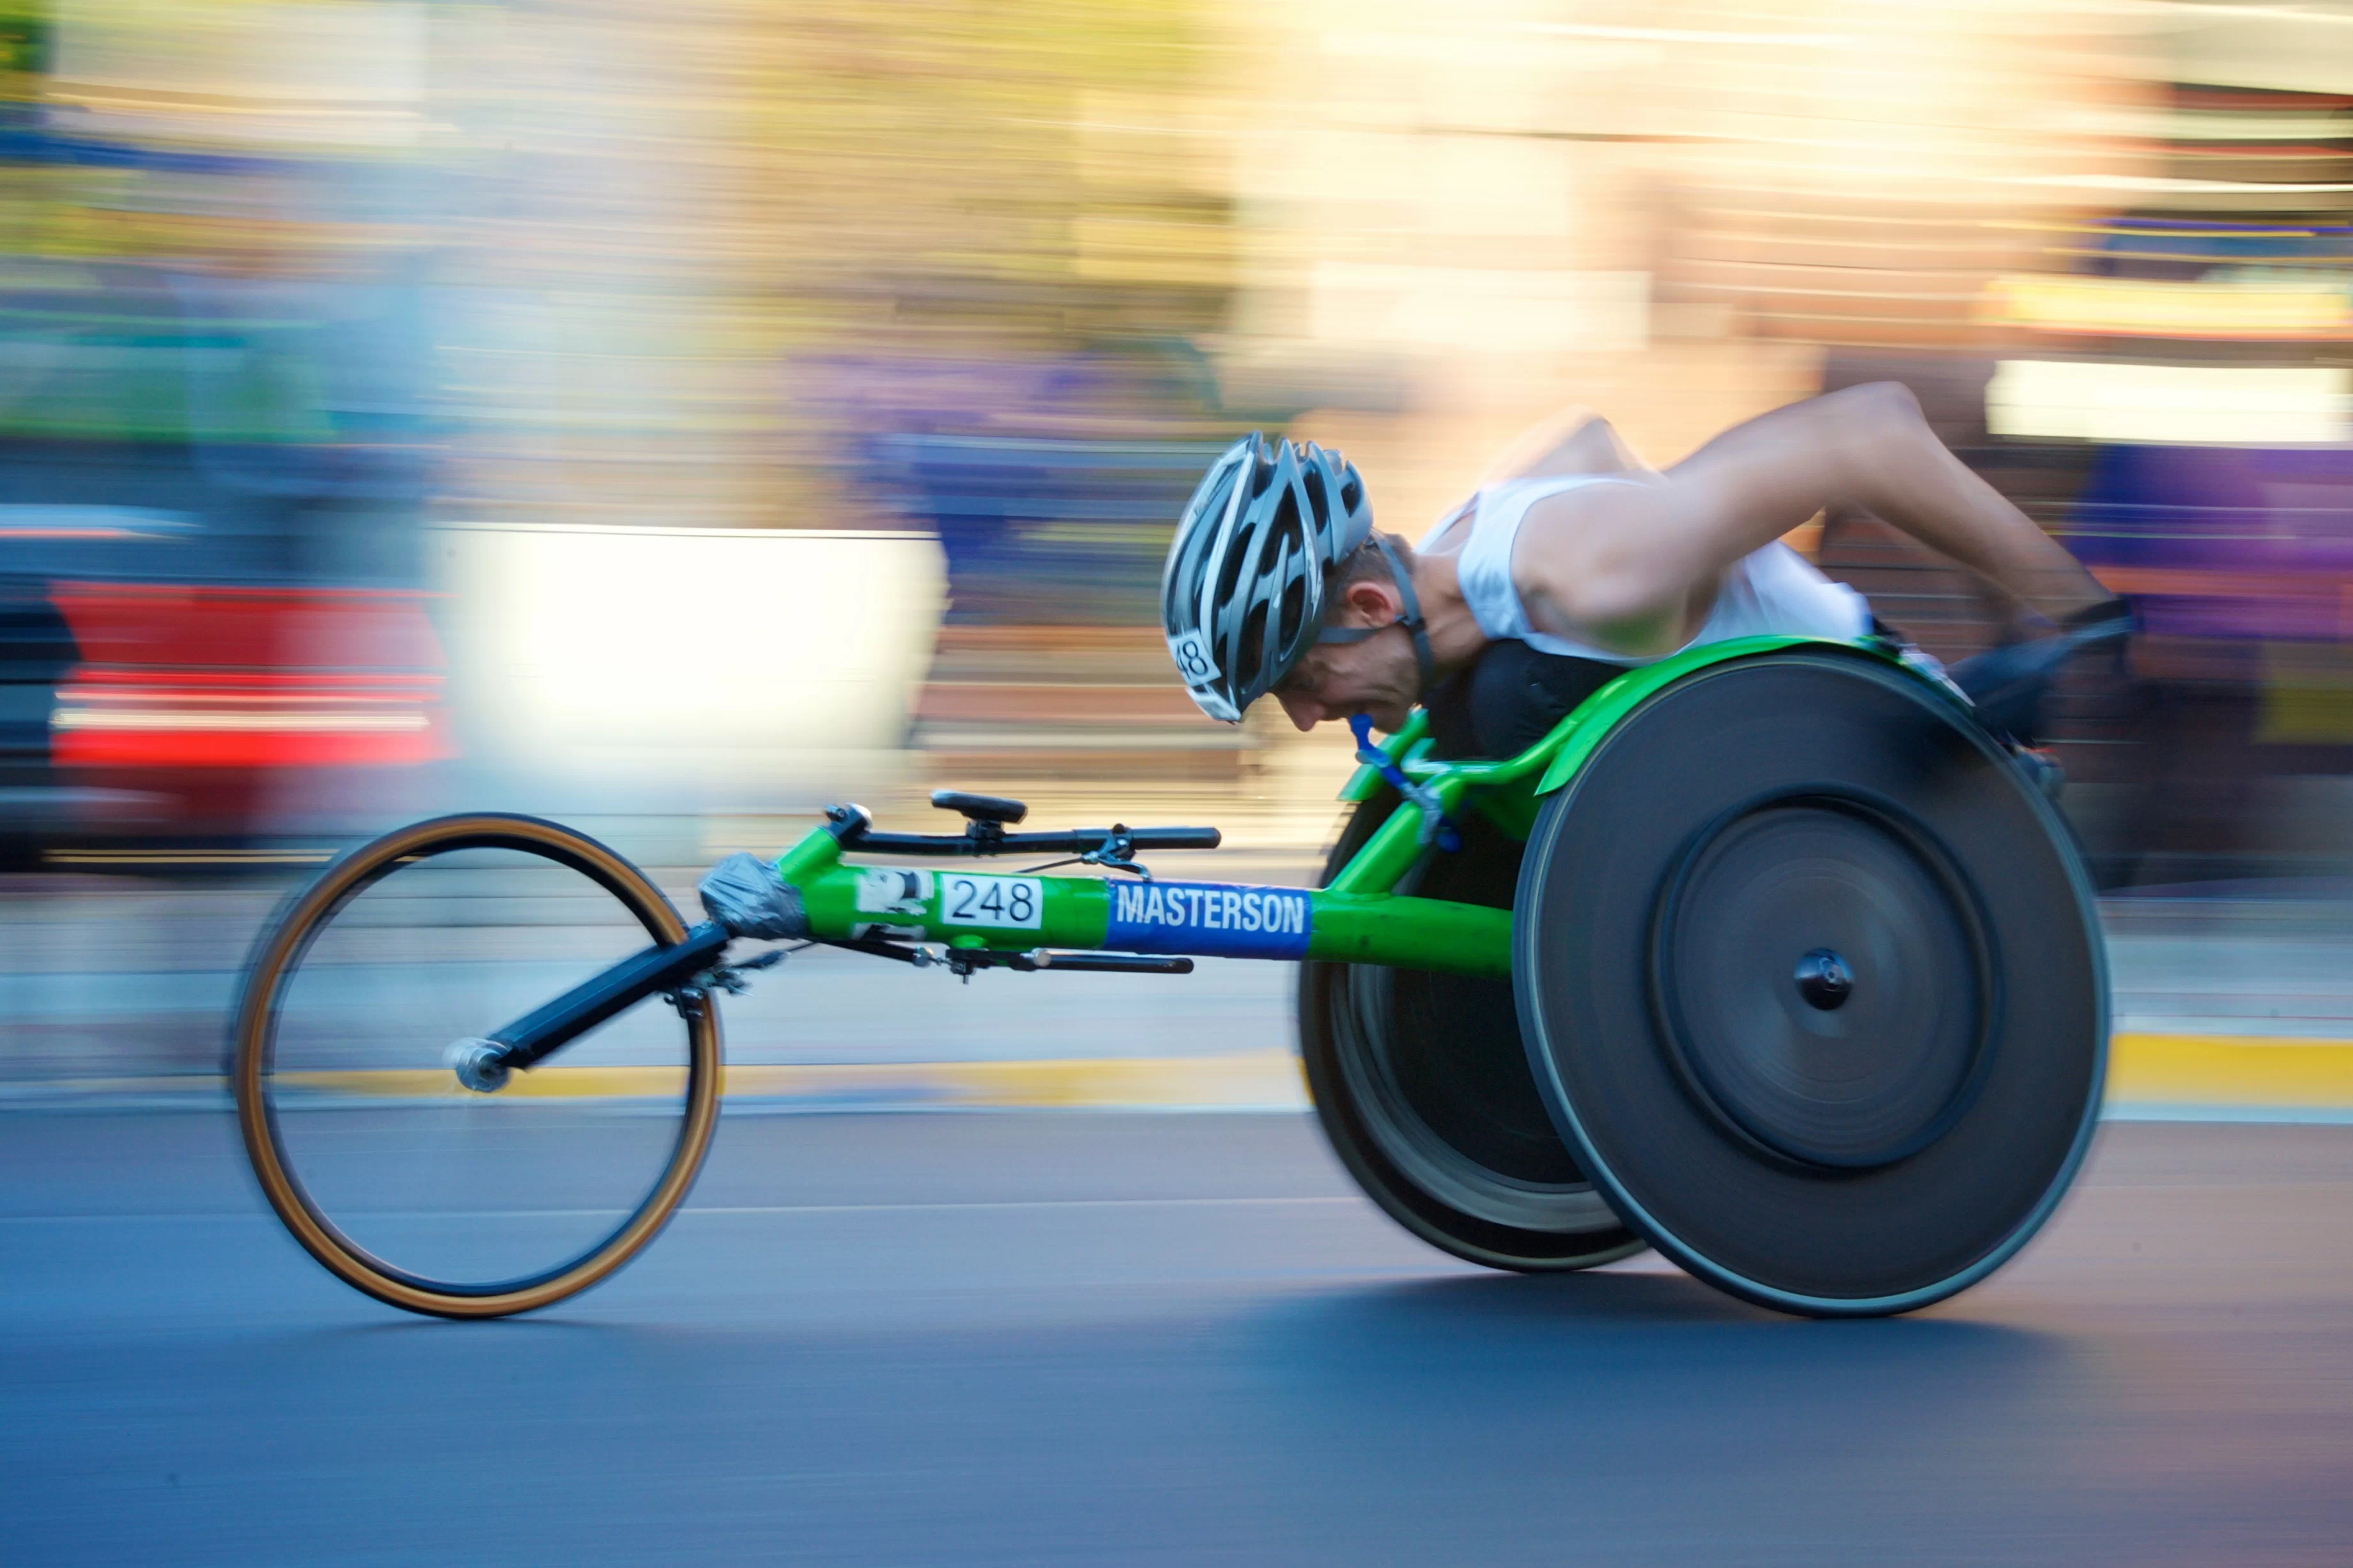 medicina dello sport-handbyke-sporterapia-sport terapia-sport disabili-sport per disabili-invalidità-disabilità-ability channel-heyoka